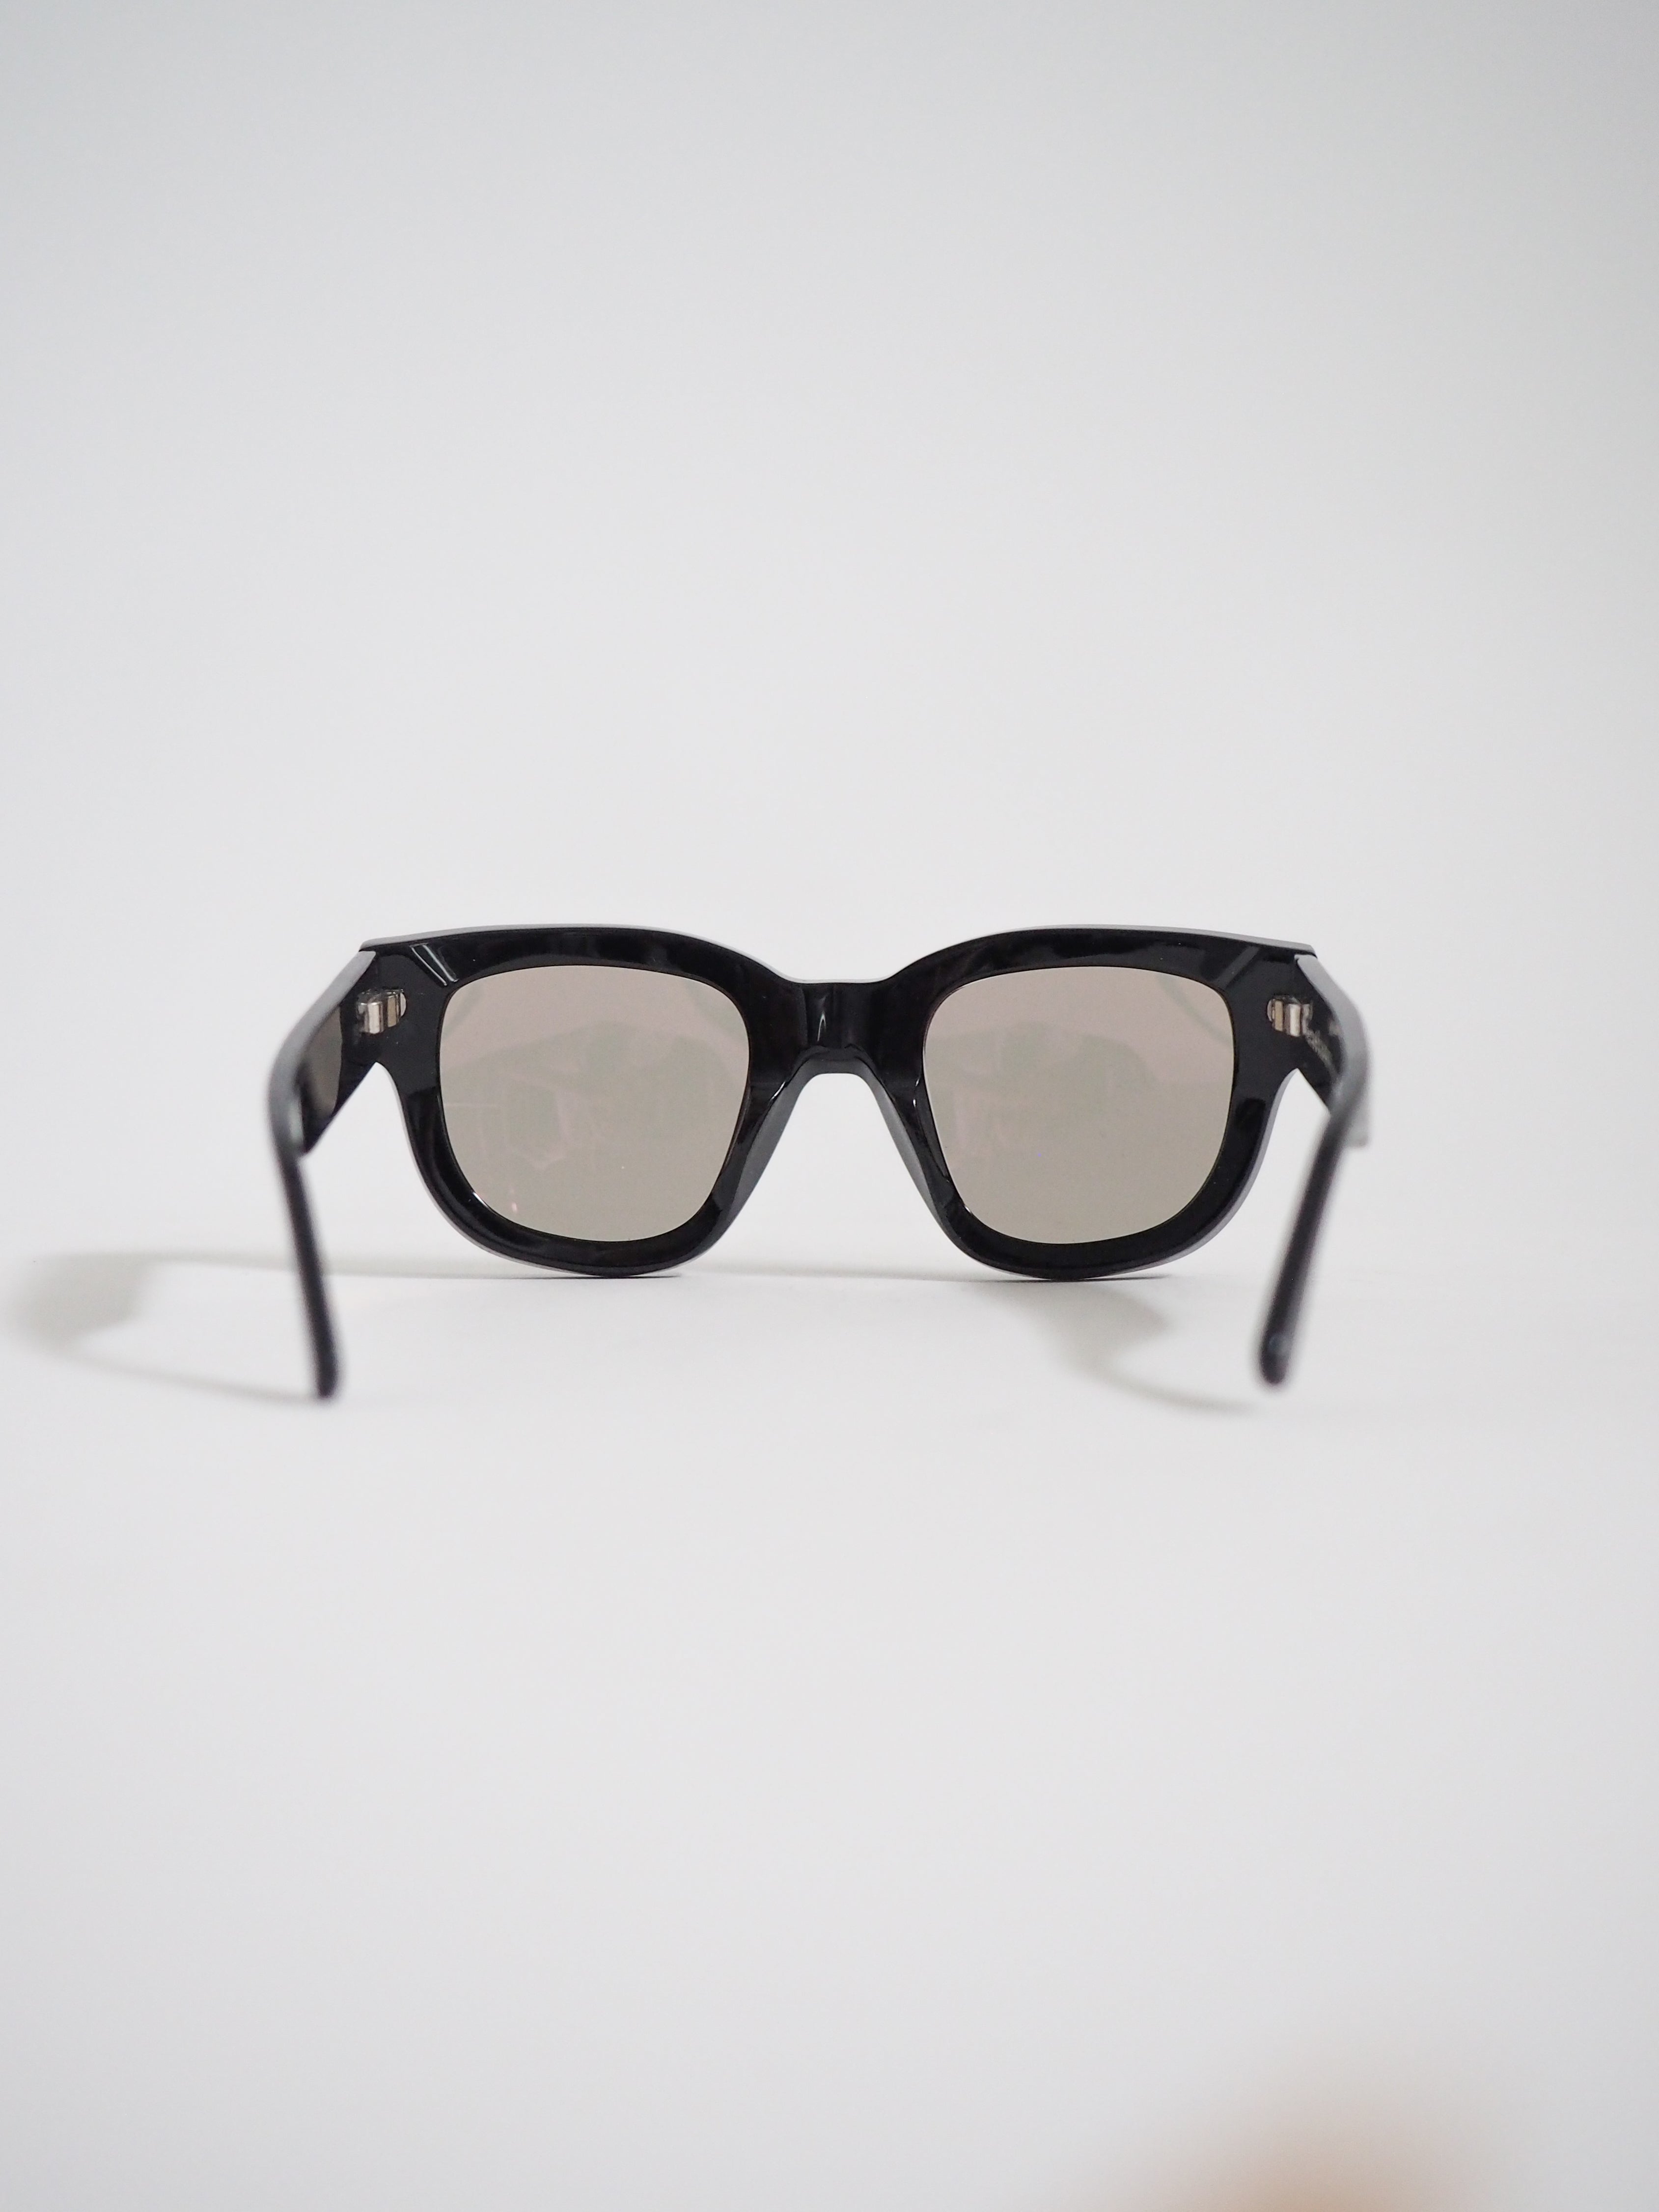 Acne Studios Frame Sunglasses